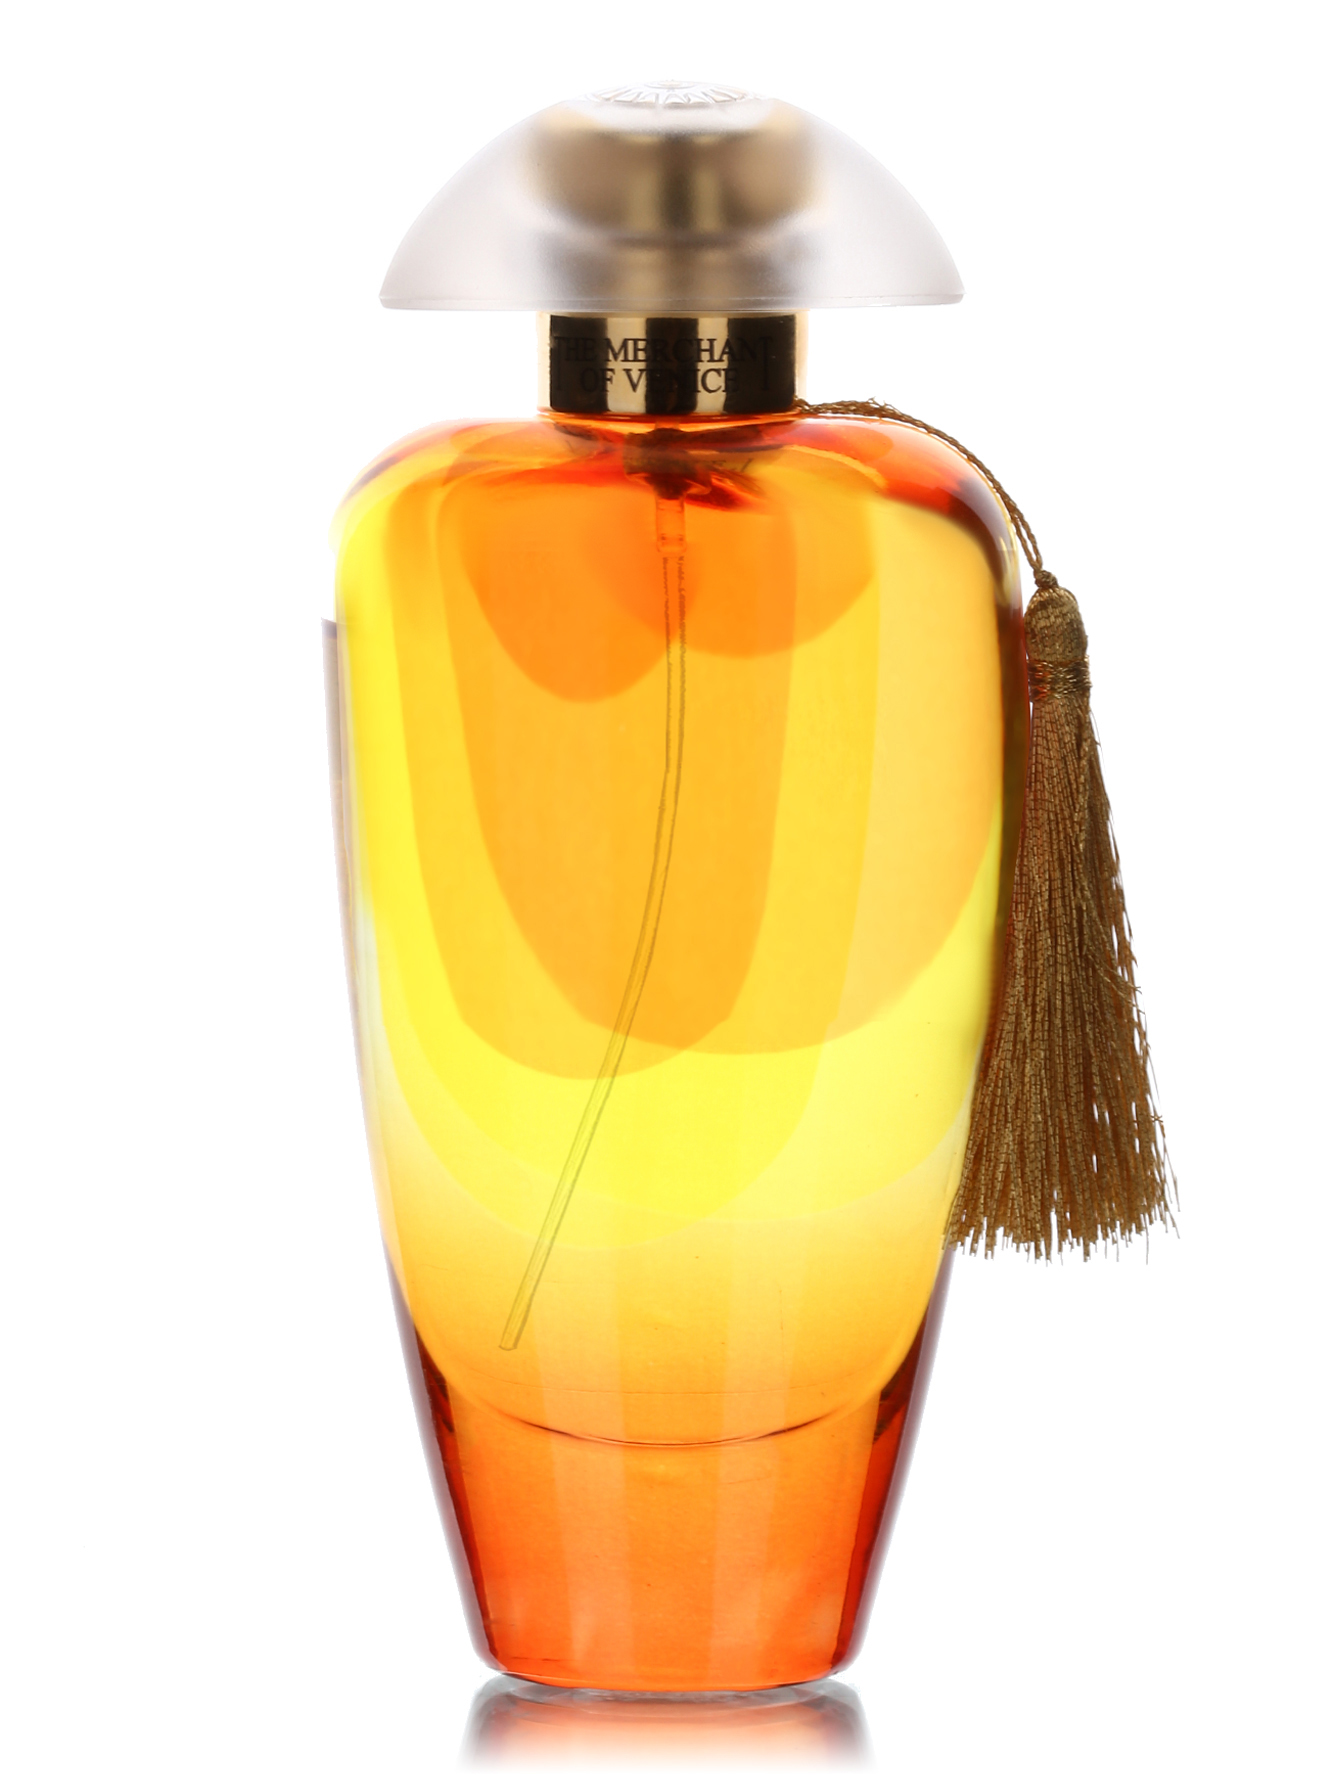  Парфюмированная вода - Noble potion, Murano Collection, 100ml - Общий вид